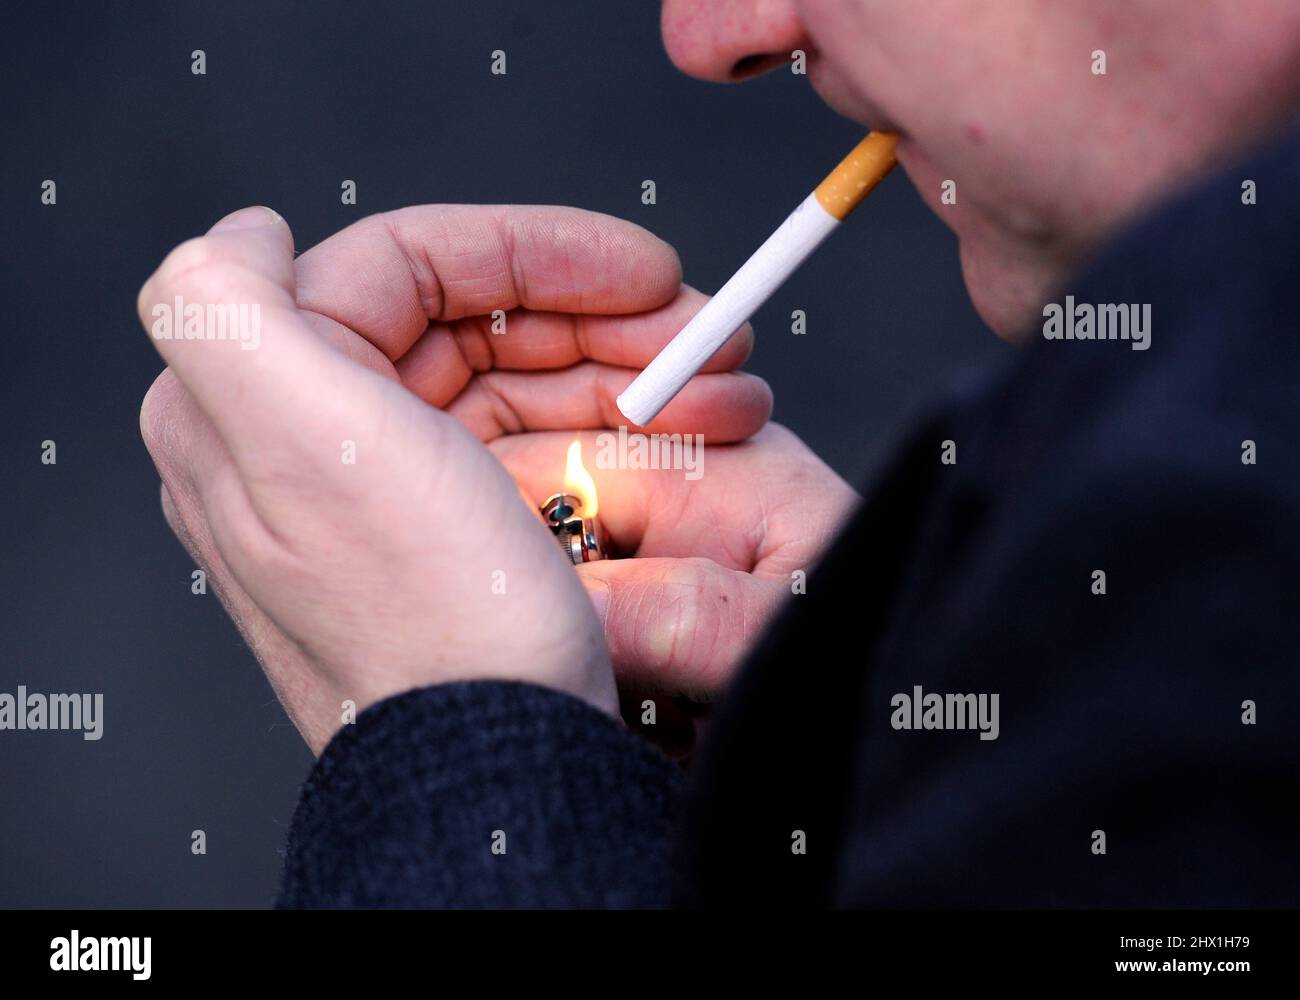 BILD POSIERTE MEIN MODELL. Aktenfoto vom 12/03/13 eines Mannes, der eine Zigarette raucht, da weniger als die Hälfte der im Krankenhaus eingewiesenen Raucher Ratschläge zum Aufhören erhalten, so eine neue Umfrage. Ausgabedatum: Mittwoch, 9. März 2022. Stockfoto